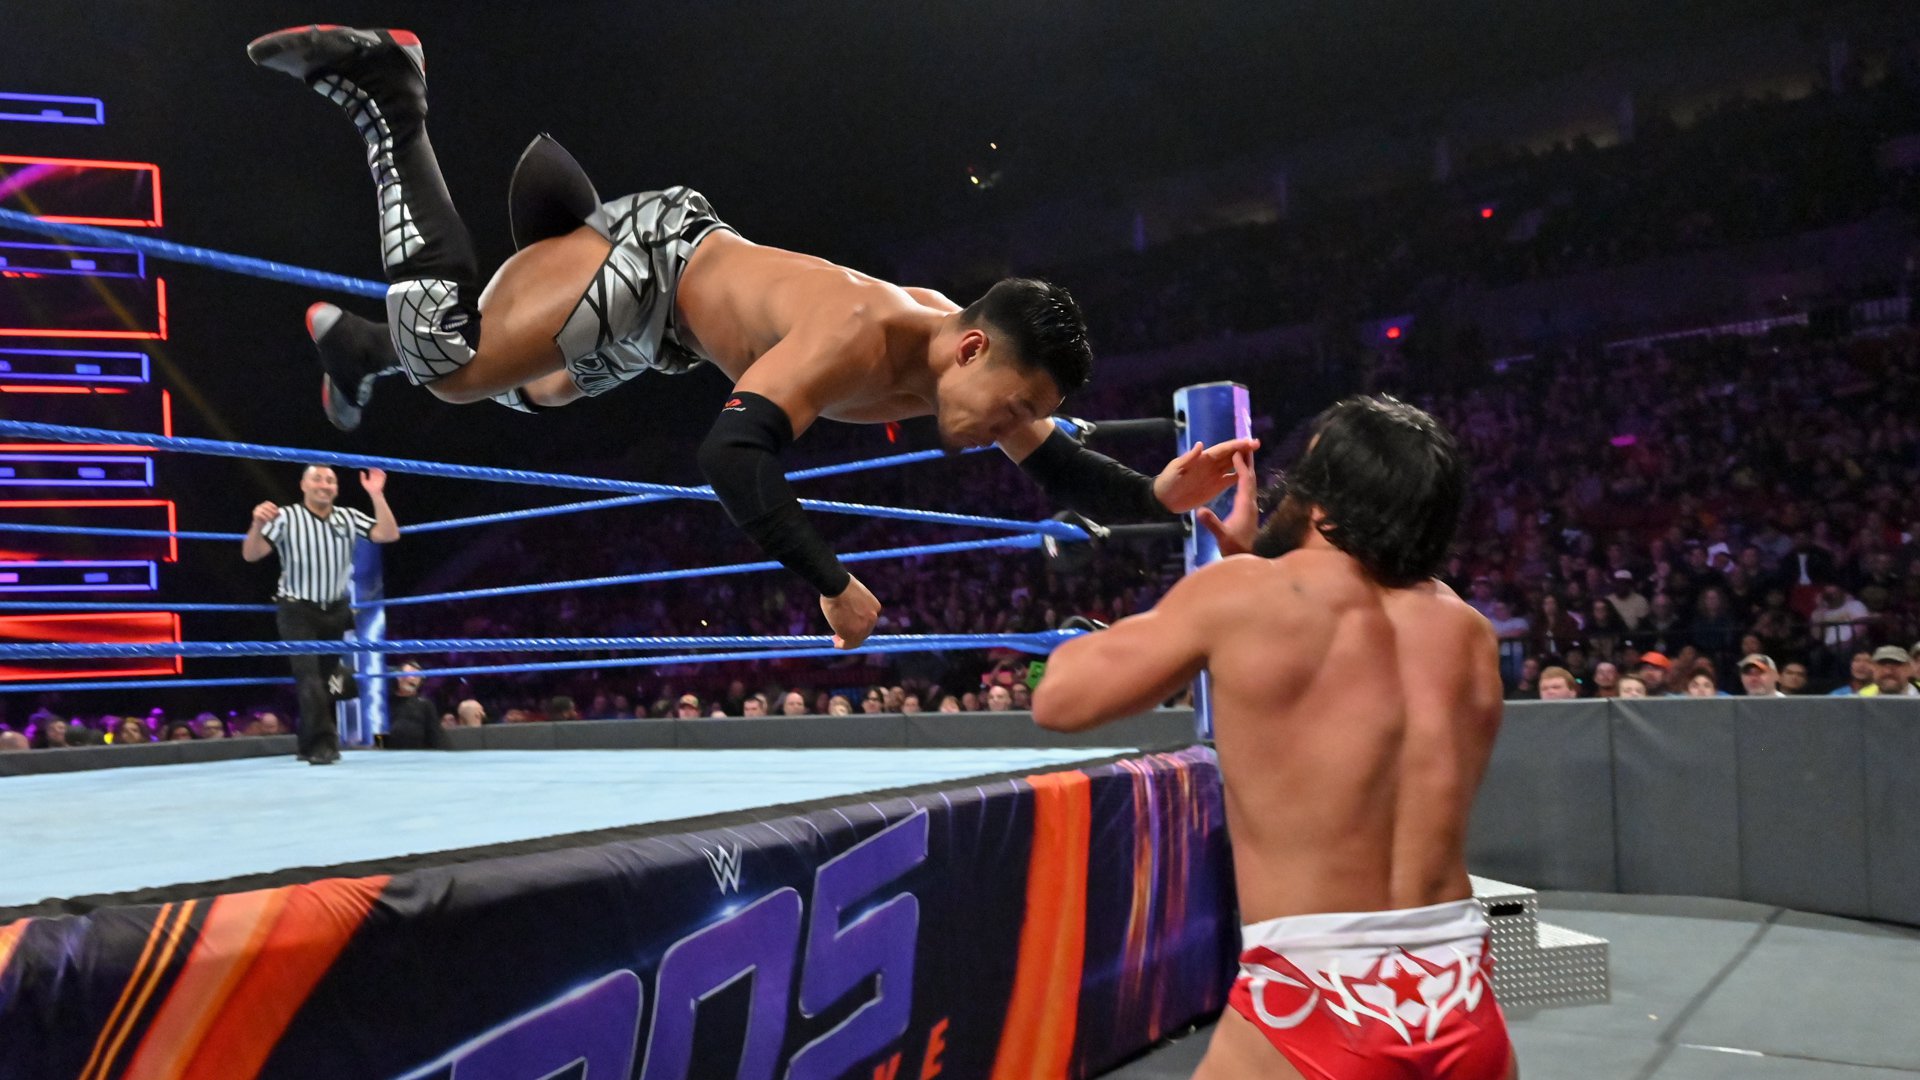 Tony Nese def. Akira Tozawa to earn a WWE Cruiserweight Title Match